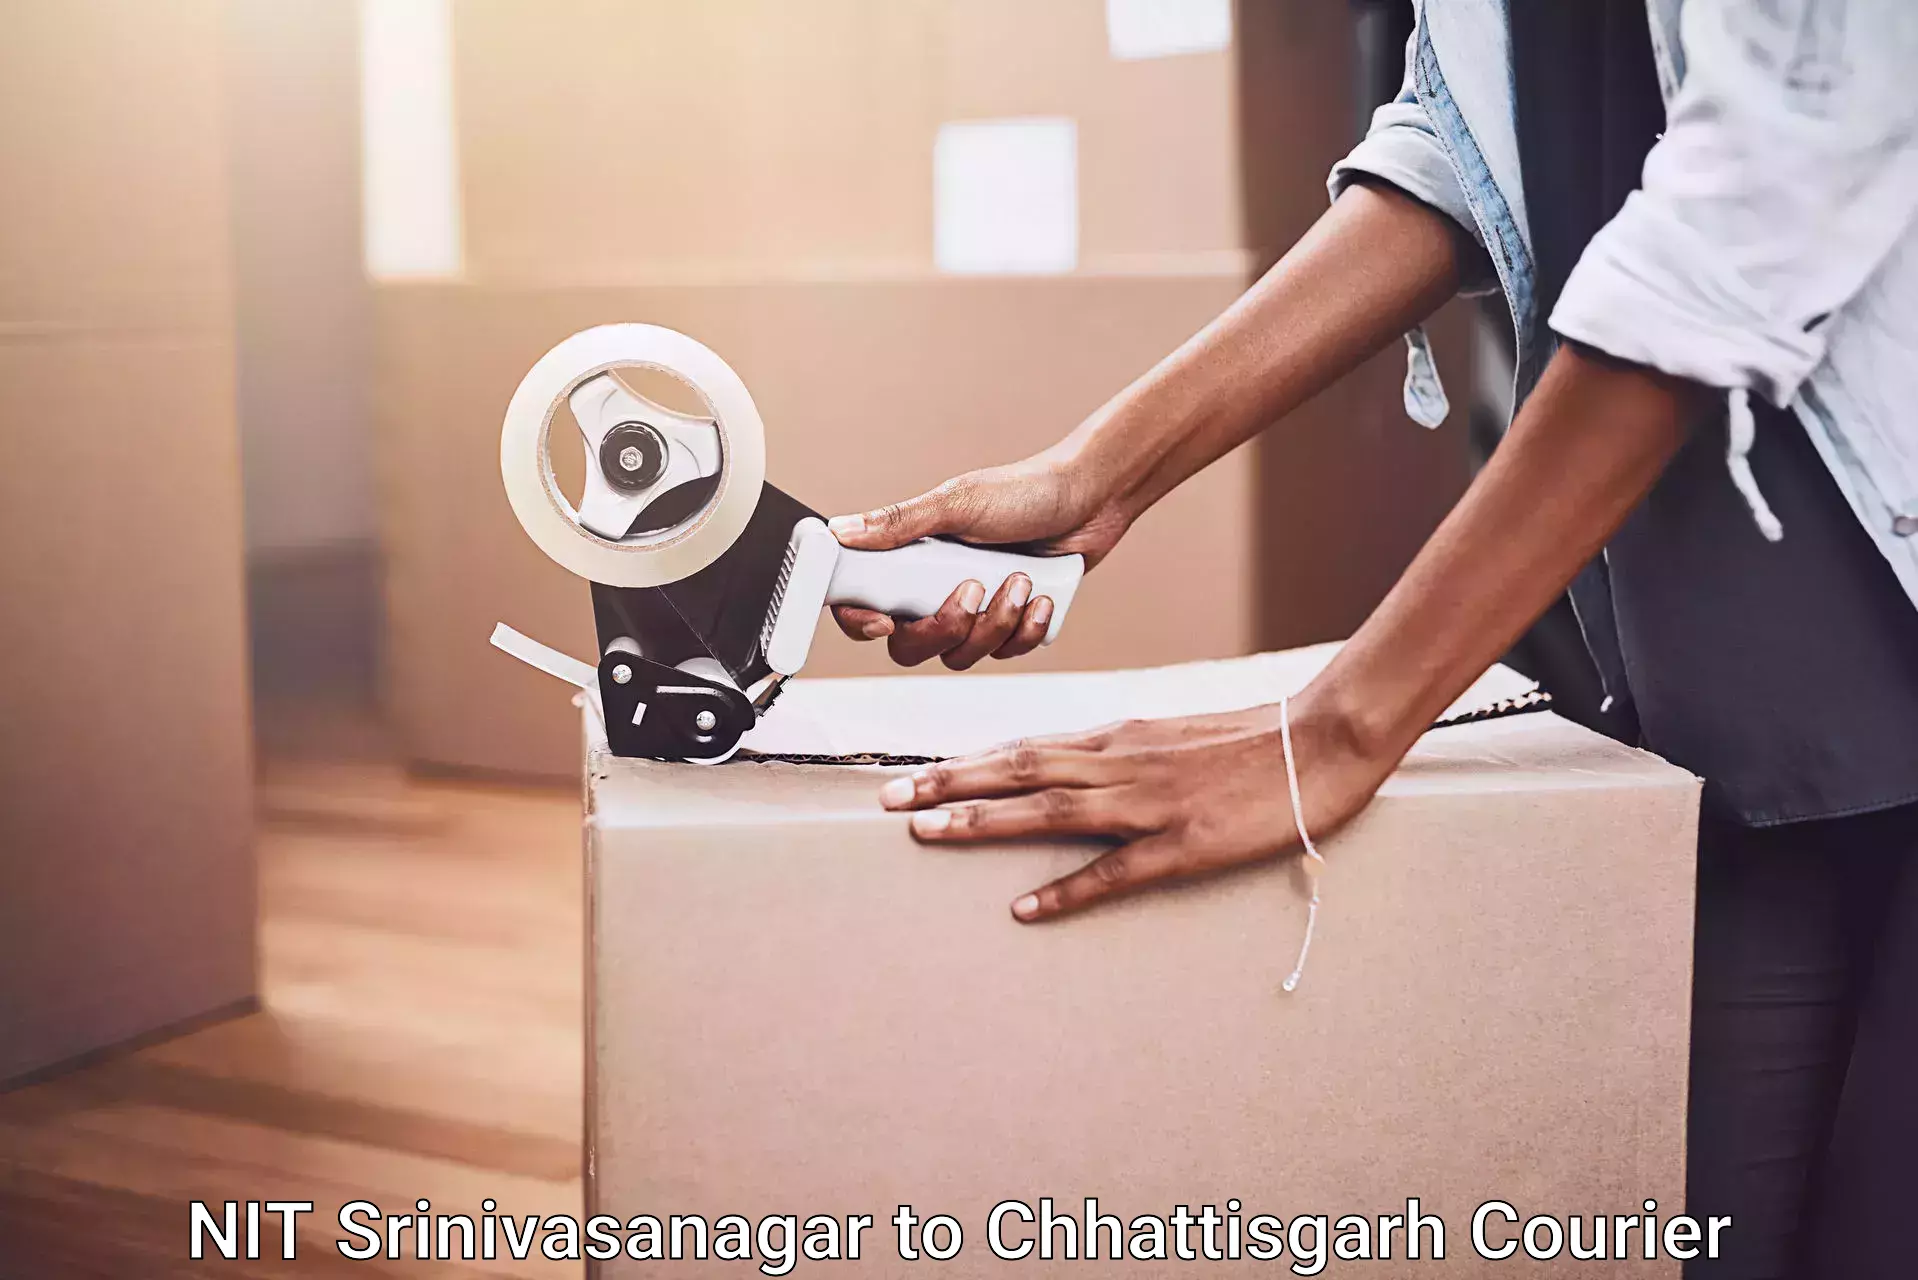 Furniture delivery service NIT Srinivasanagar to Chhattisgarh